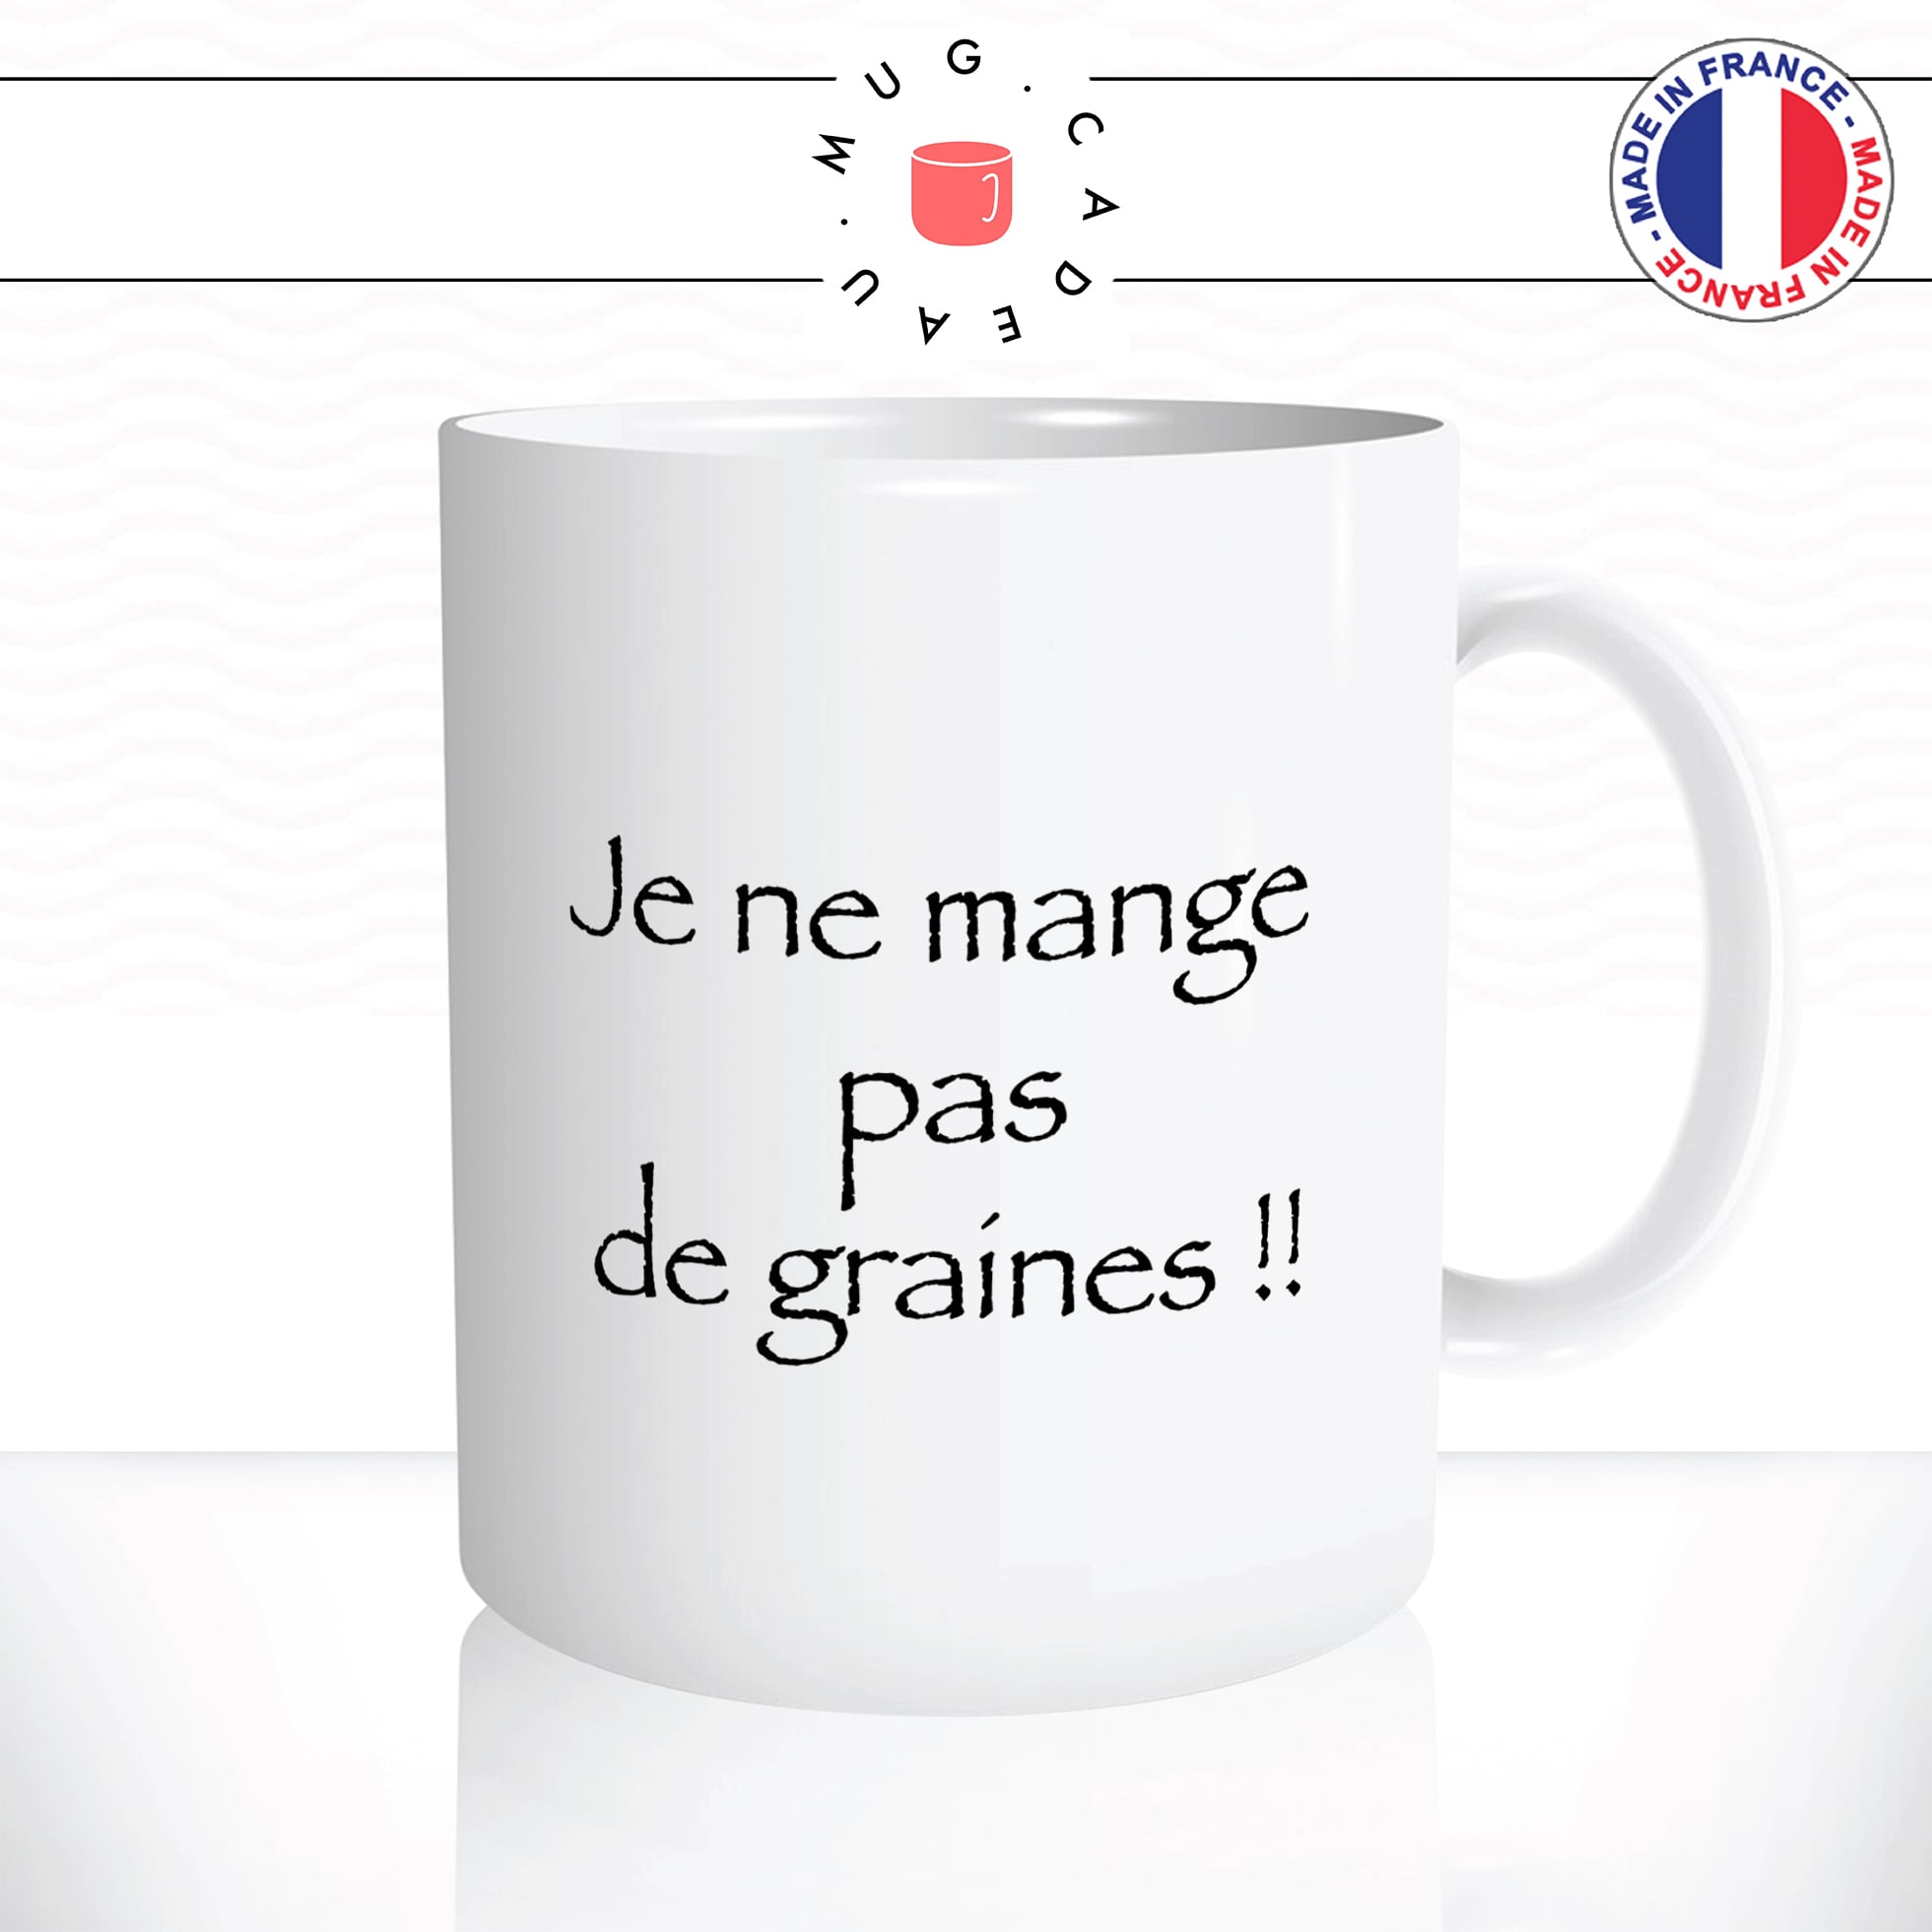 mug-tasse-je-ne-mange-pas-de-graines-kaamelott-série-francaise-citation-culte-drole-fun-idée-cadeau-original-café-thé-personnalisée2-min